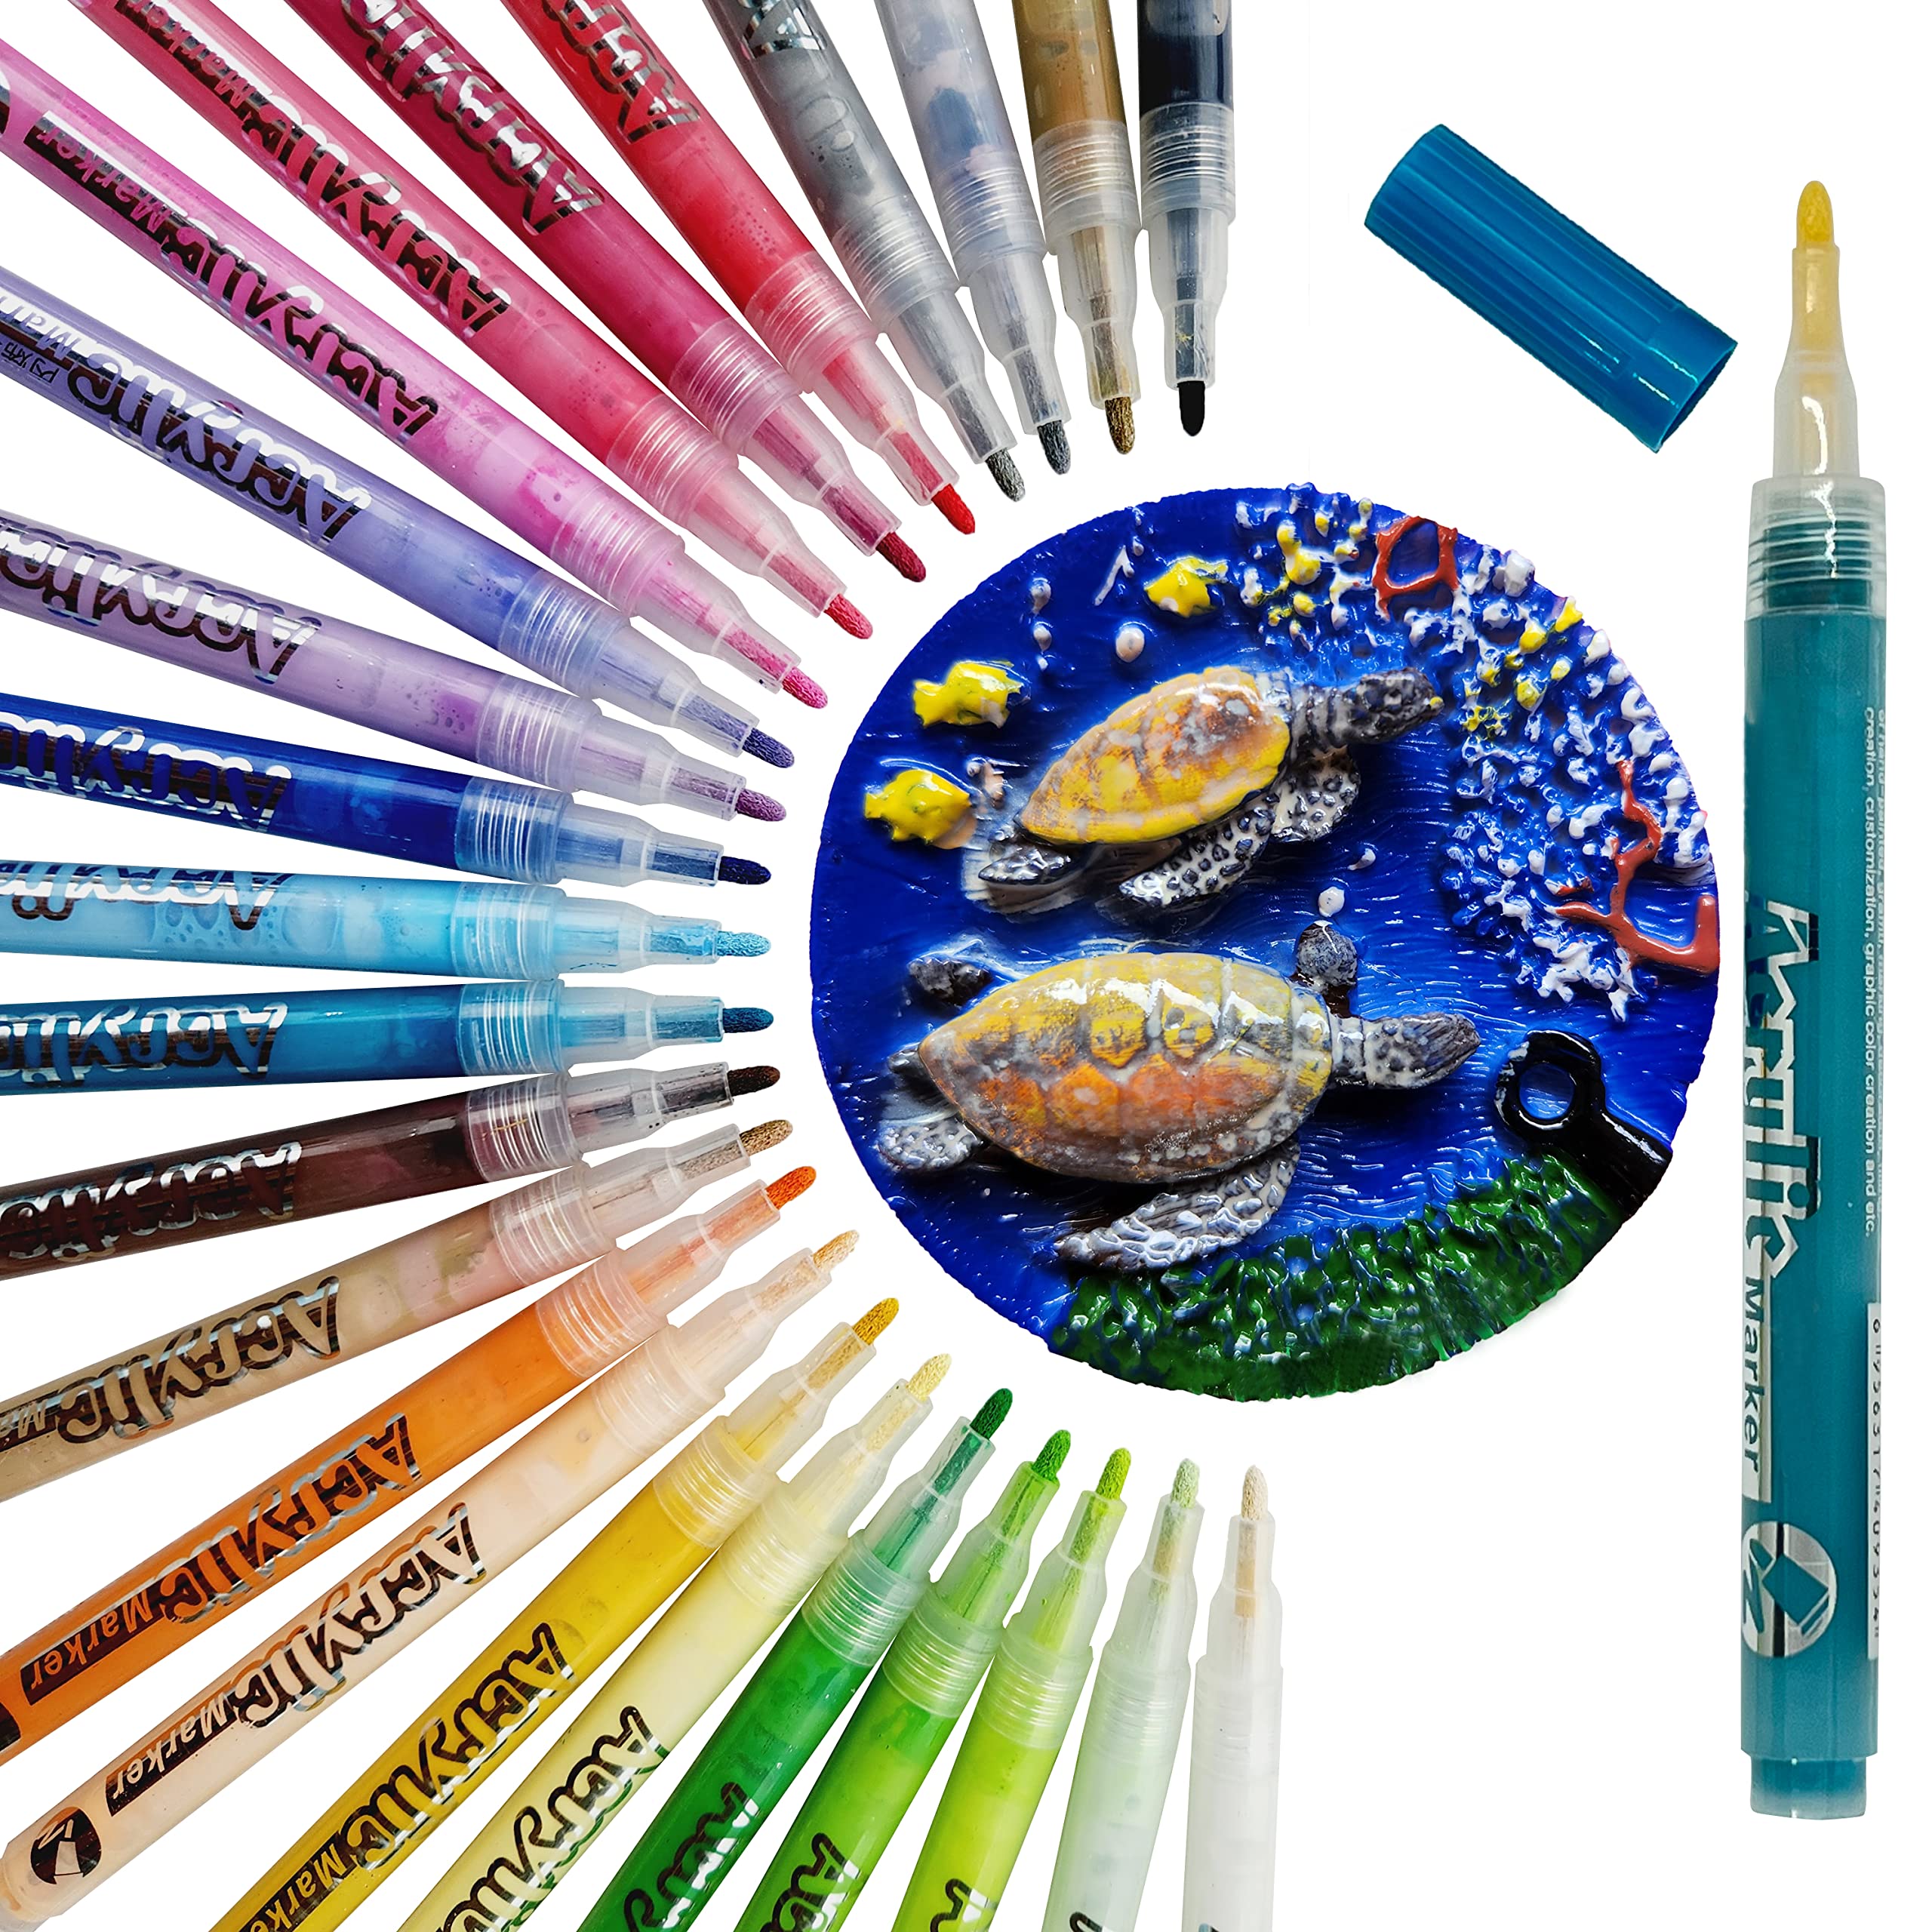 Acrylic Paint Pens Paint Markers - 24 Colors Medium Fine Tip Paint